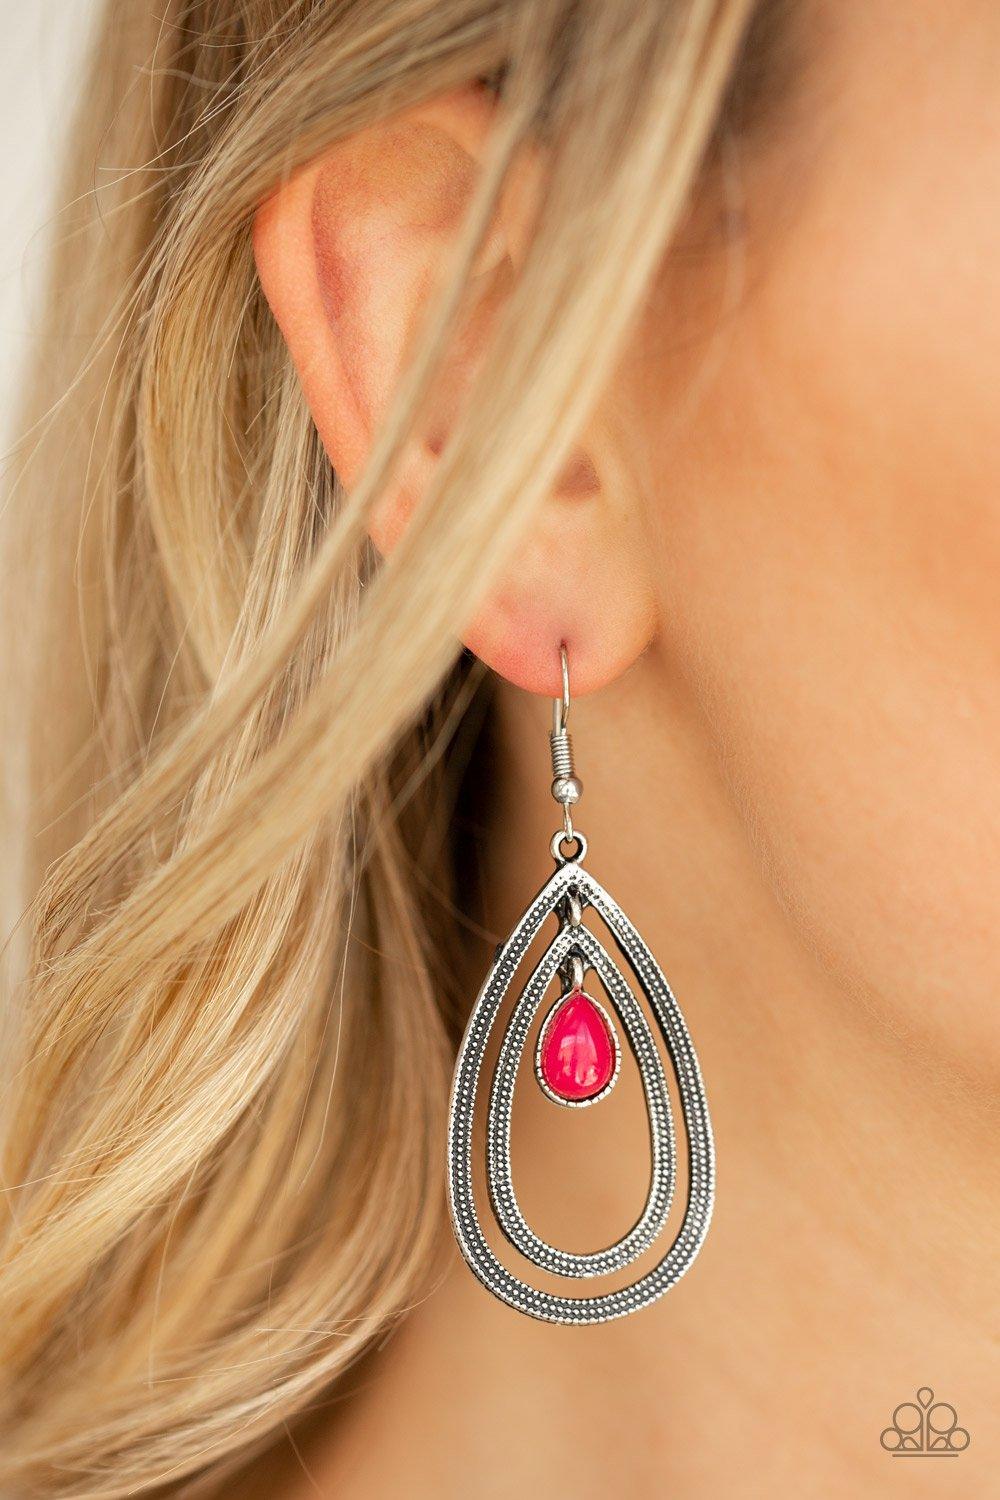 Drops of Color Pink Earrings - Jewelry by Bretta - Jewelry by Bretta